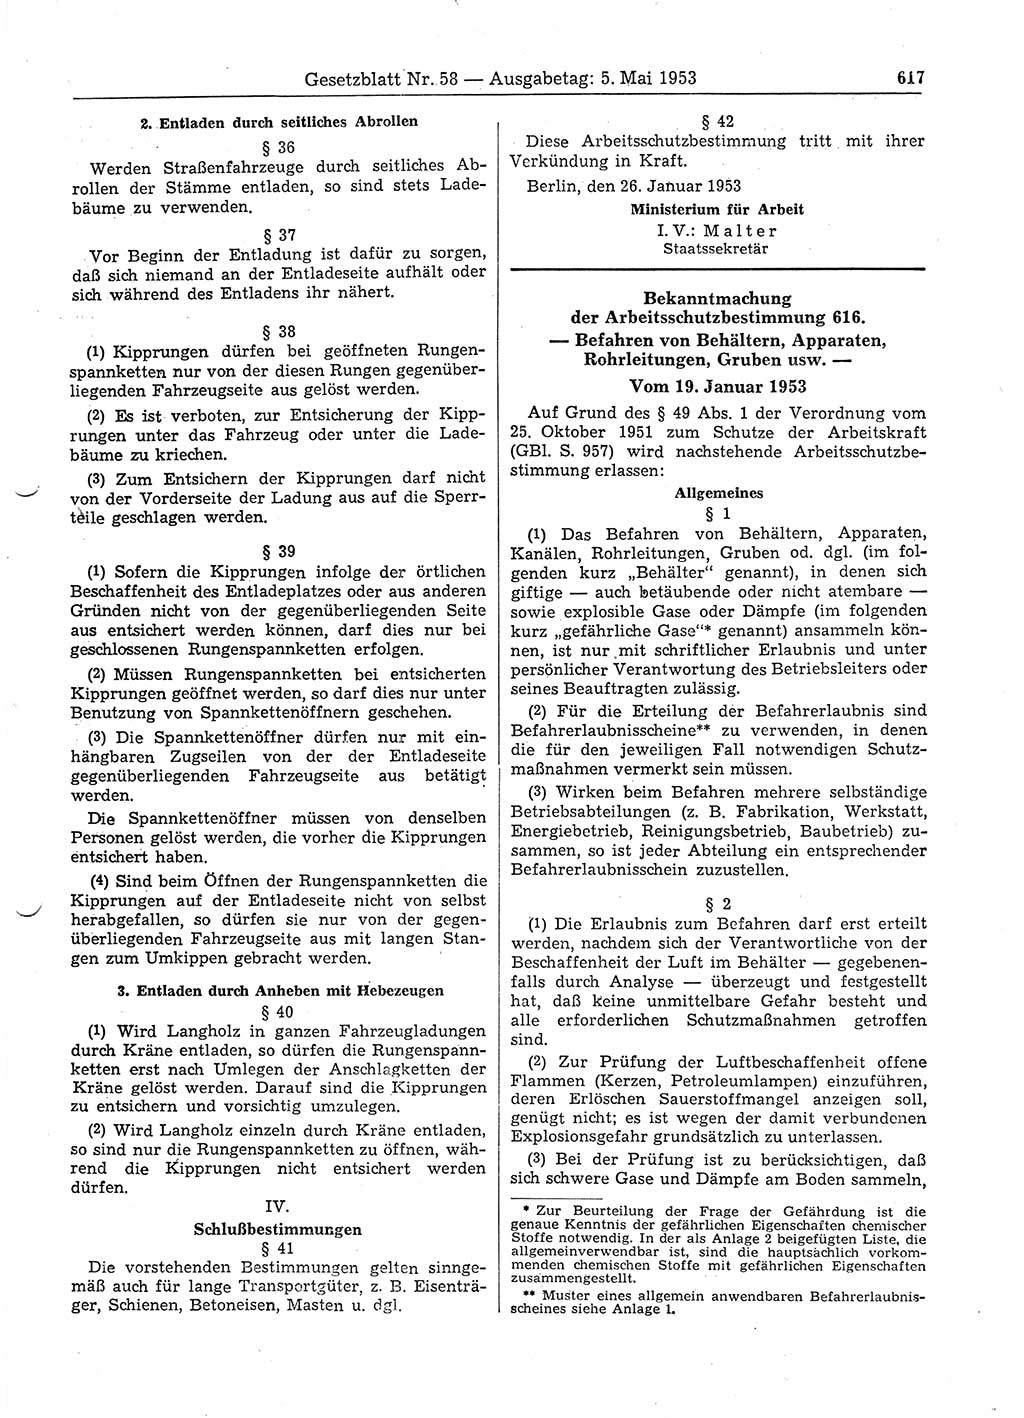 Gesetzblatt (GBl.) der Deutschen Demokratischen Republik (DDR) 1953, Seite 617 (GBl. DDR 1953, S. 617)